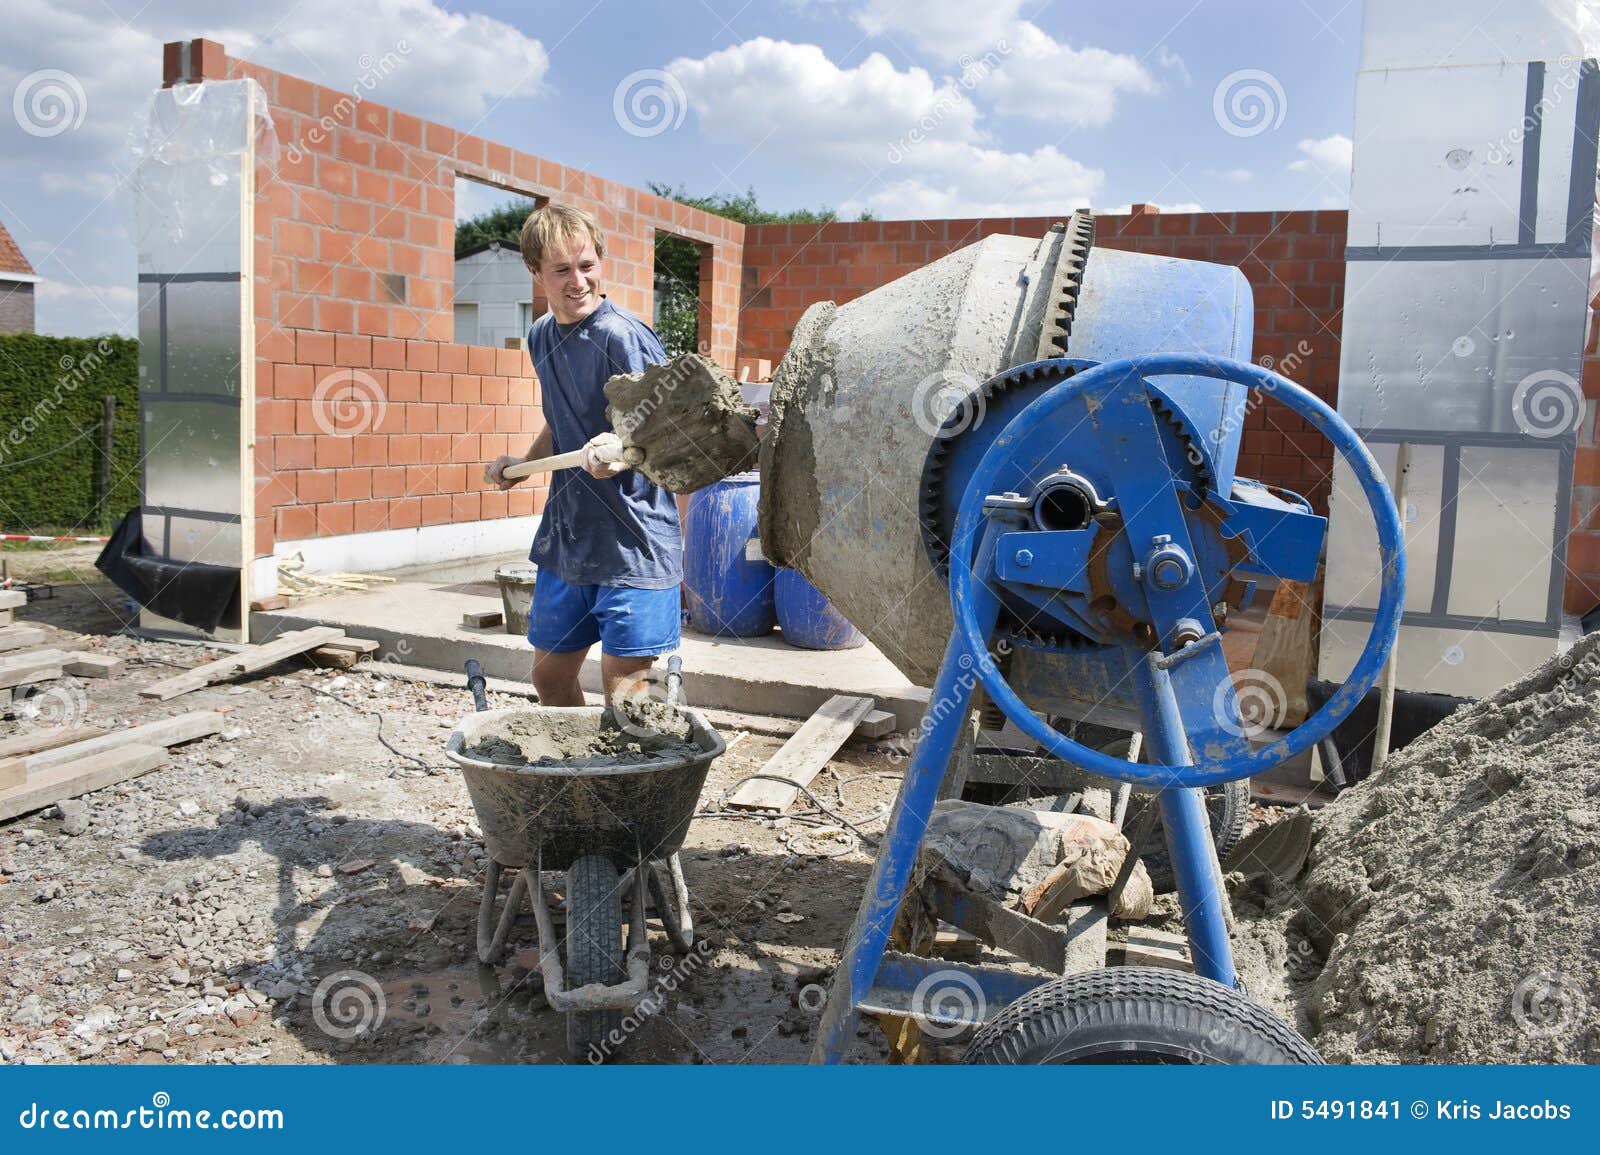 builder filling a conrete mixer